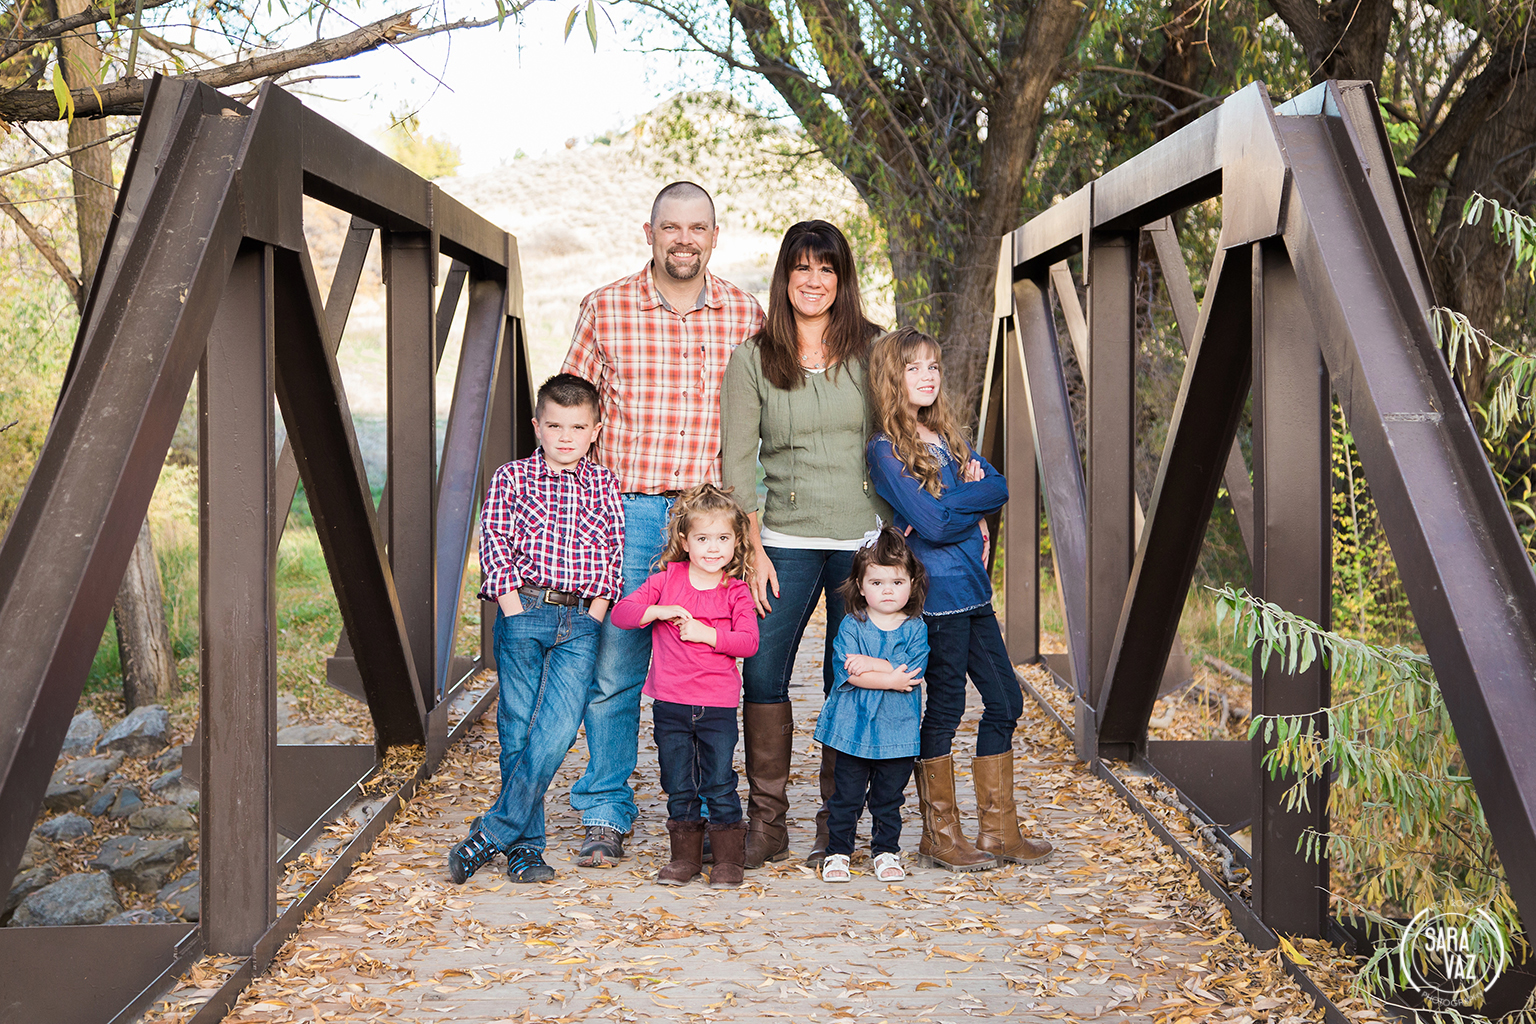 Utah Family Portrait Photographer | Utah Photographer | Utah Portrait Photographer | Portraits | Lehi Photographer | Utah County Photographer | Fall Portraits | Sara Vaz Photography